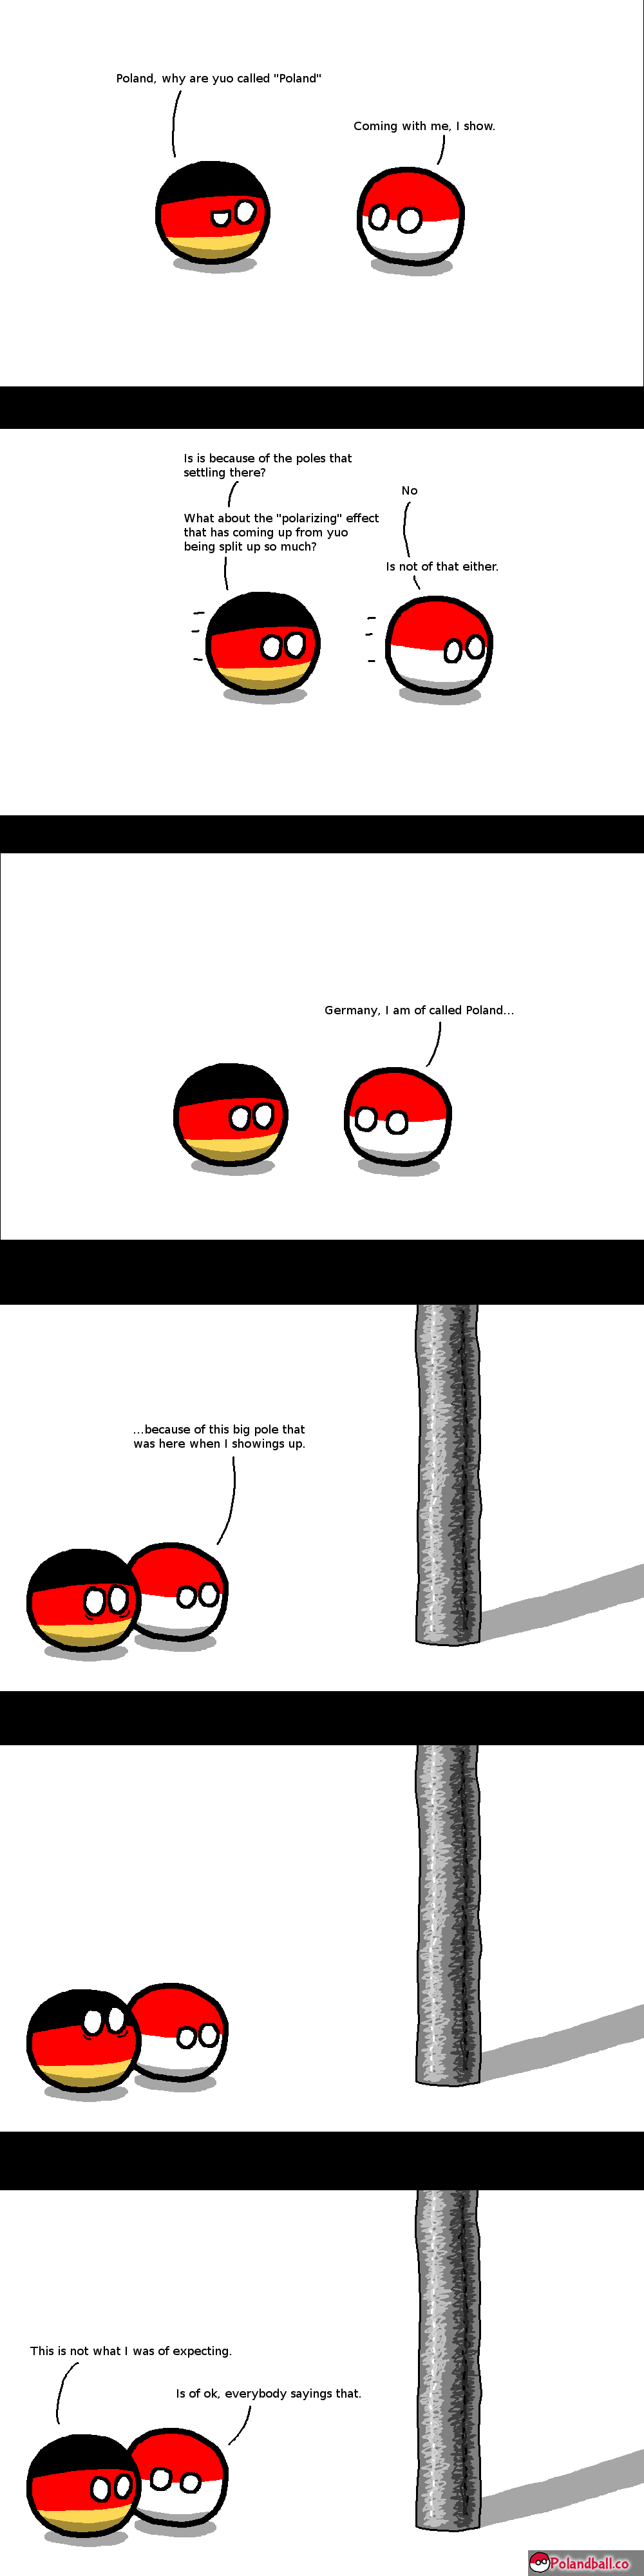 What makes a Poland